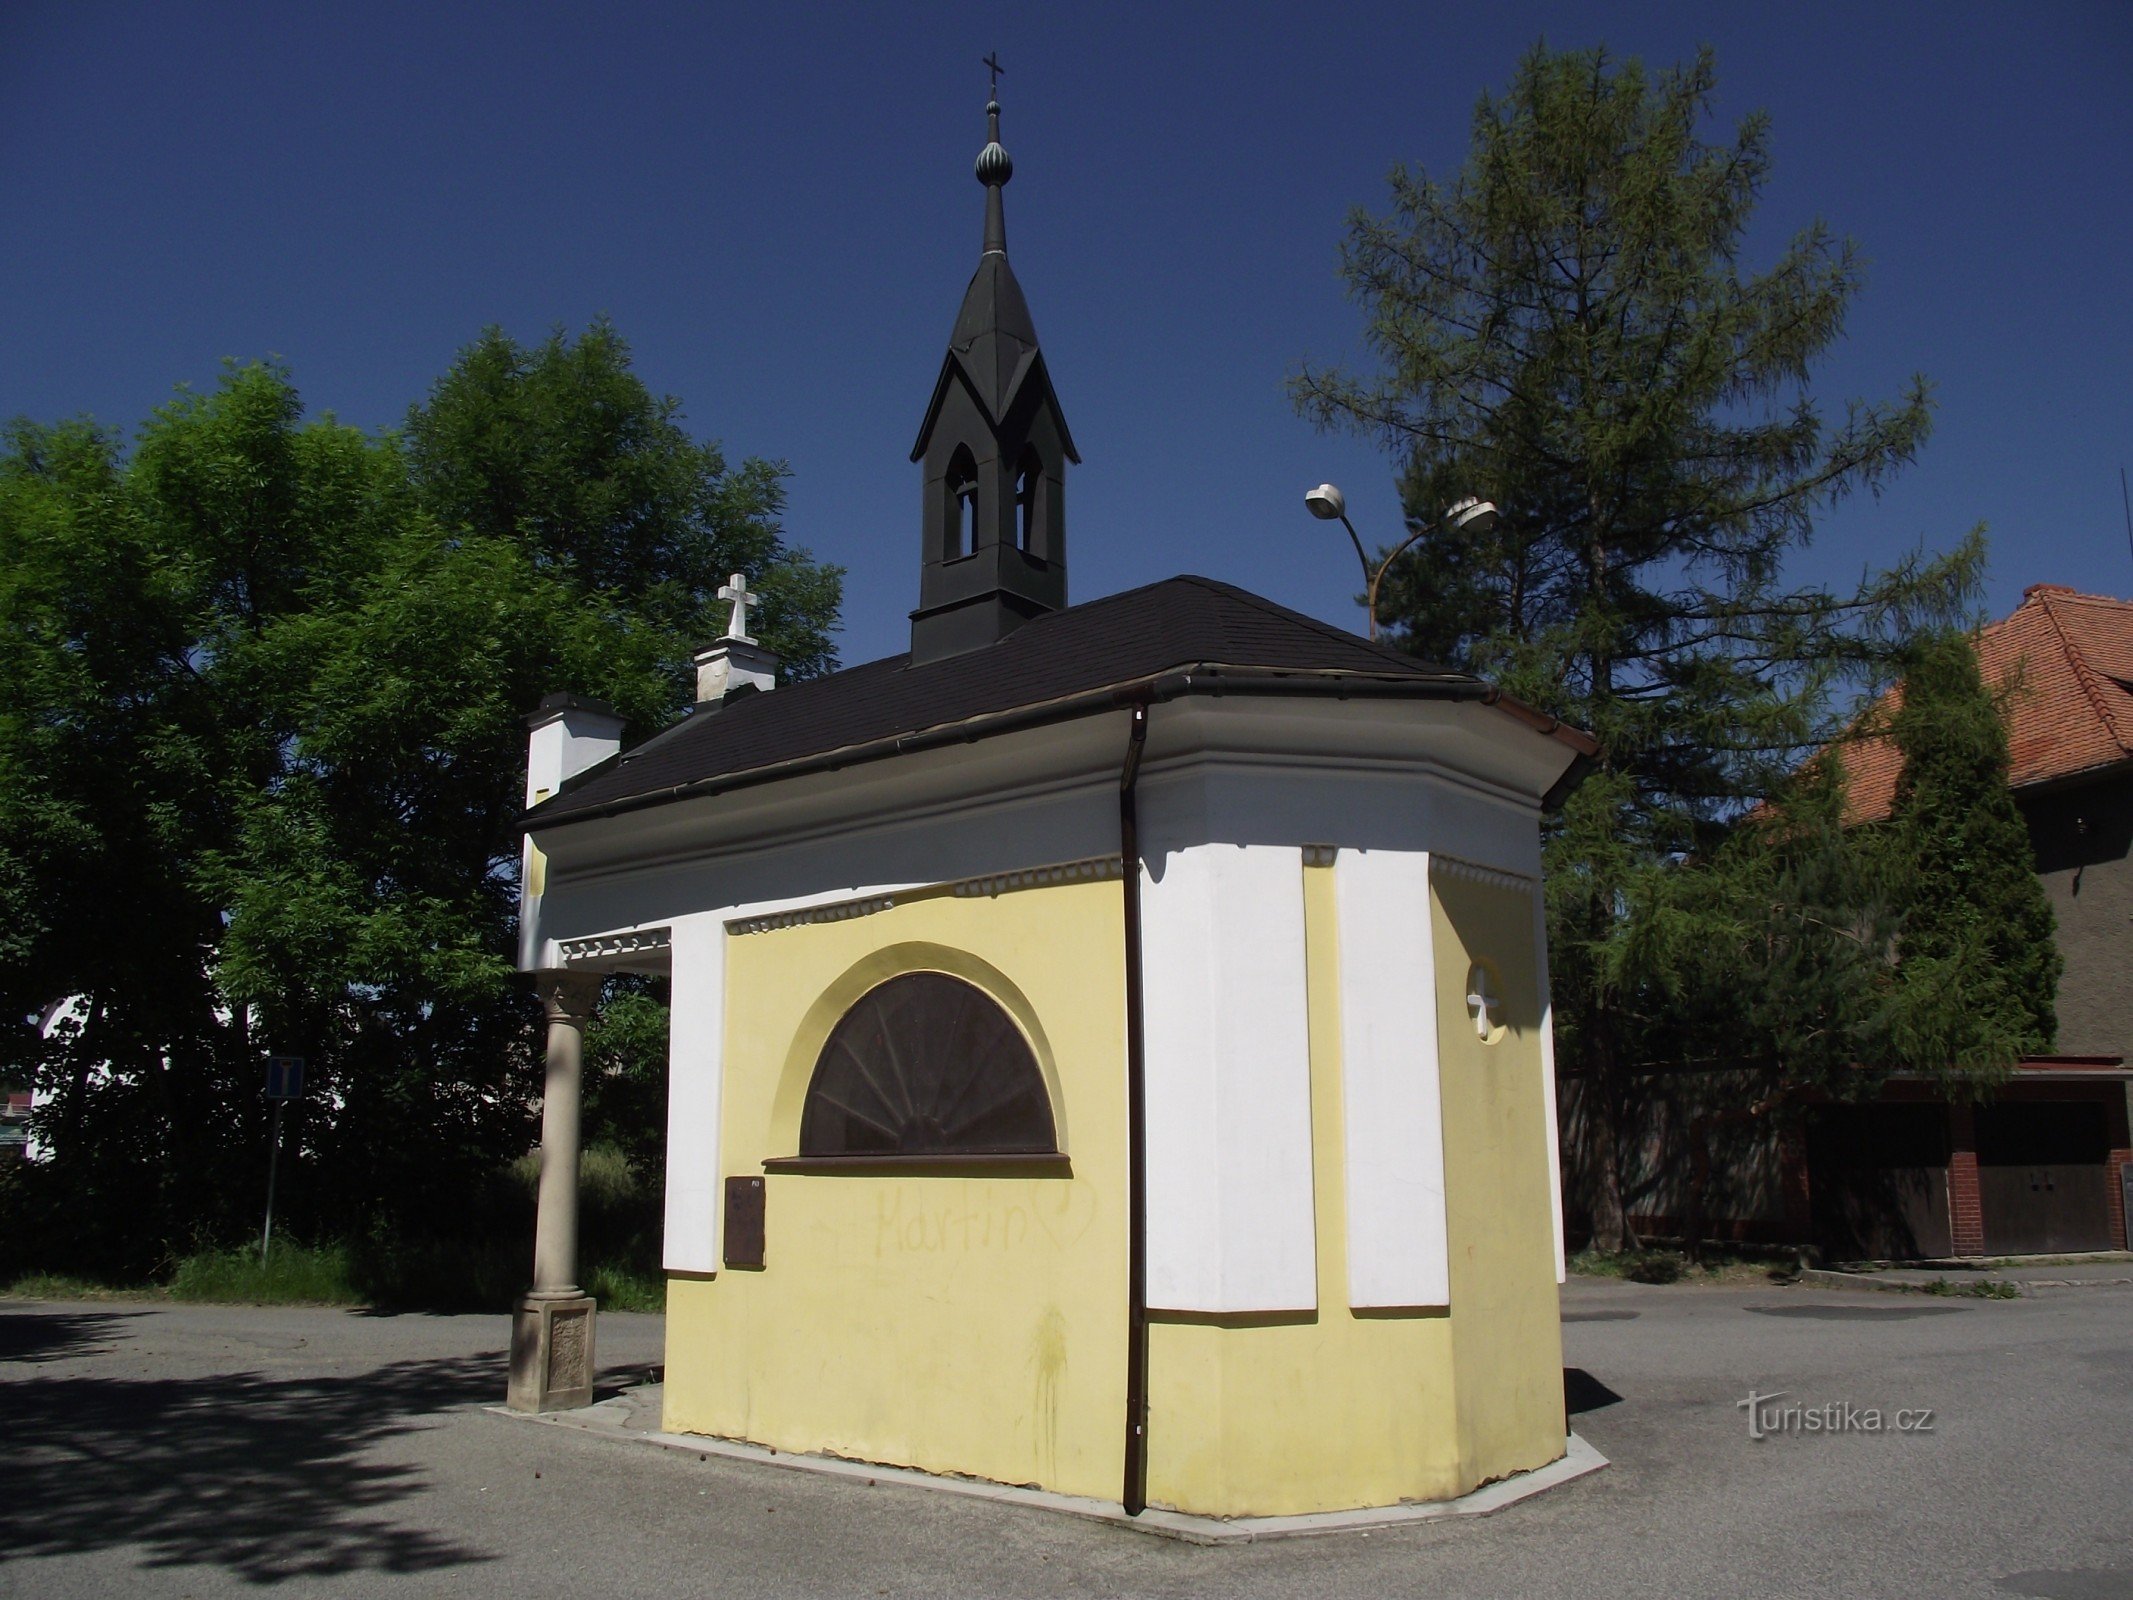 Valašské Meziříčí (Krásno) - capela de St. Rocha